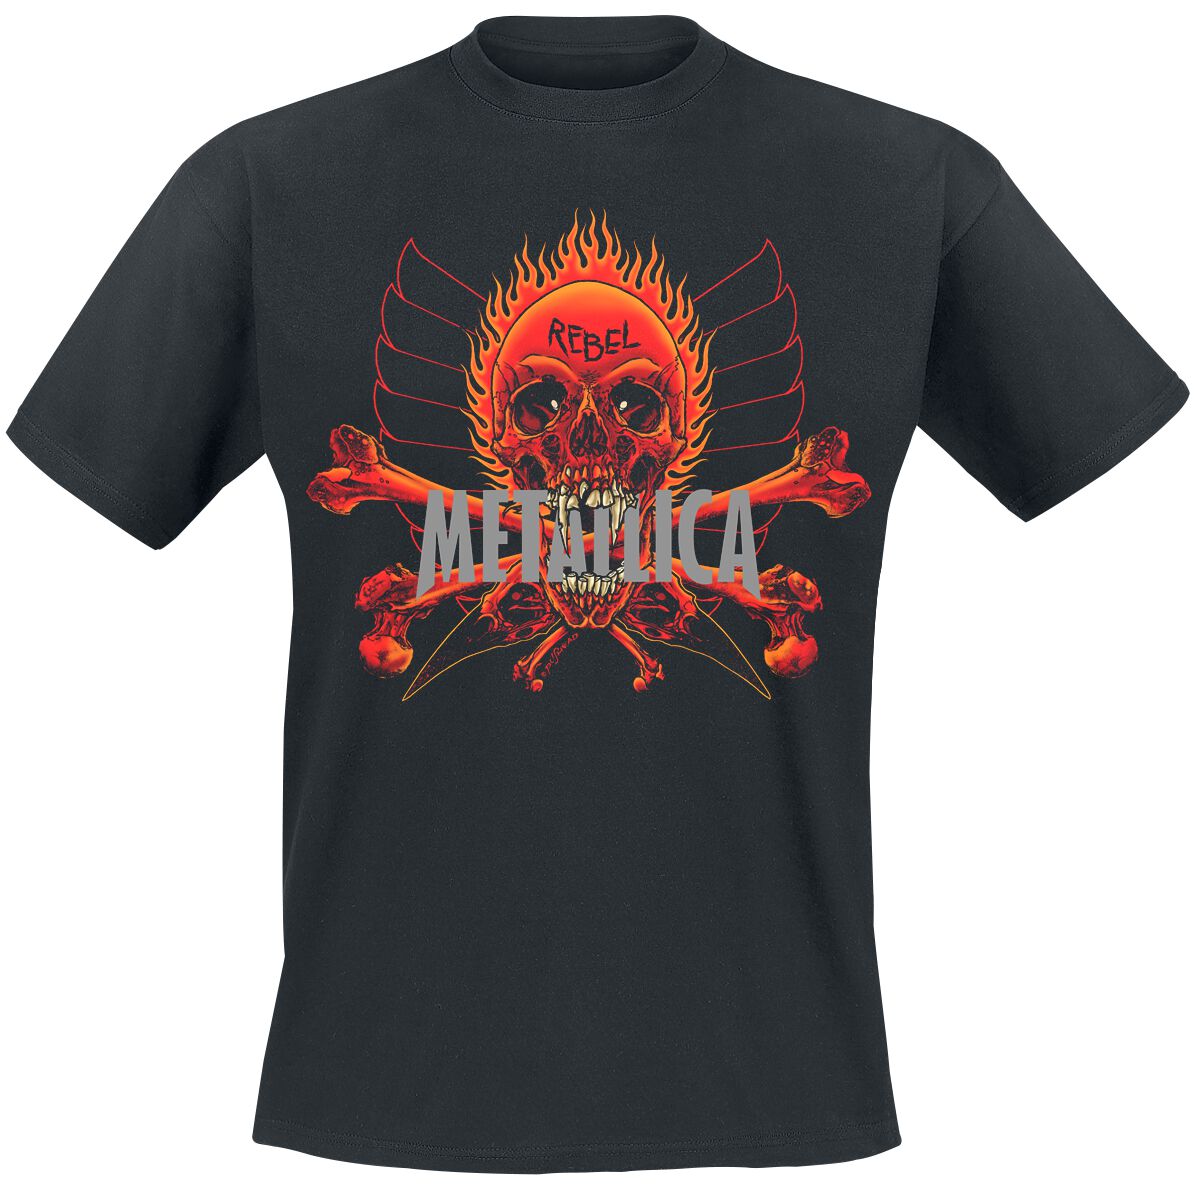 Metallica T-Shirt - Rebel - S bis XL - für Männer - Größe L - schwarz  - Lizenziertes Merchandise!